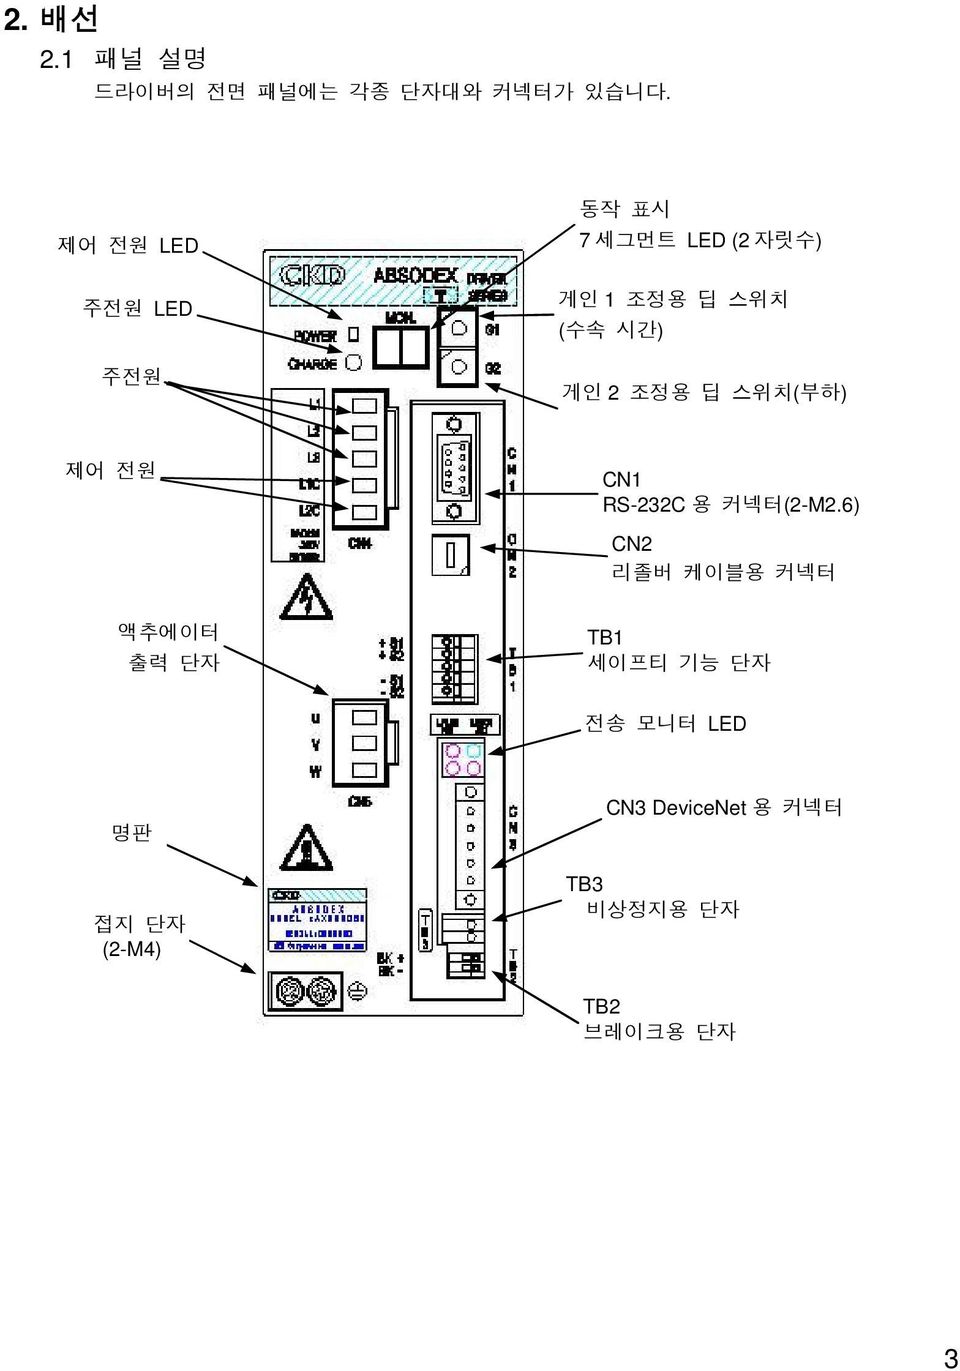 게인 2 조정용 딥 스위치(부하) 제어 전원 CN1 RS-232C 용 커넥터(2-M2.